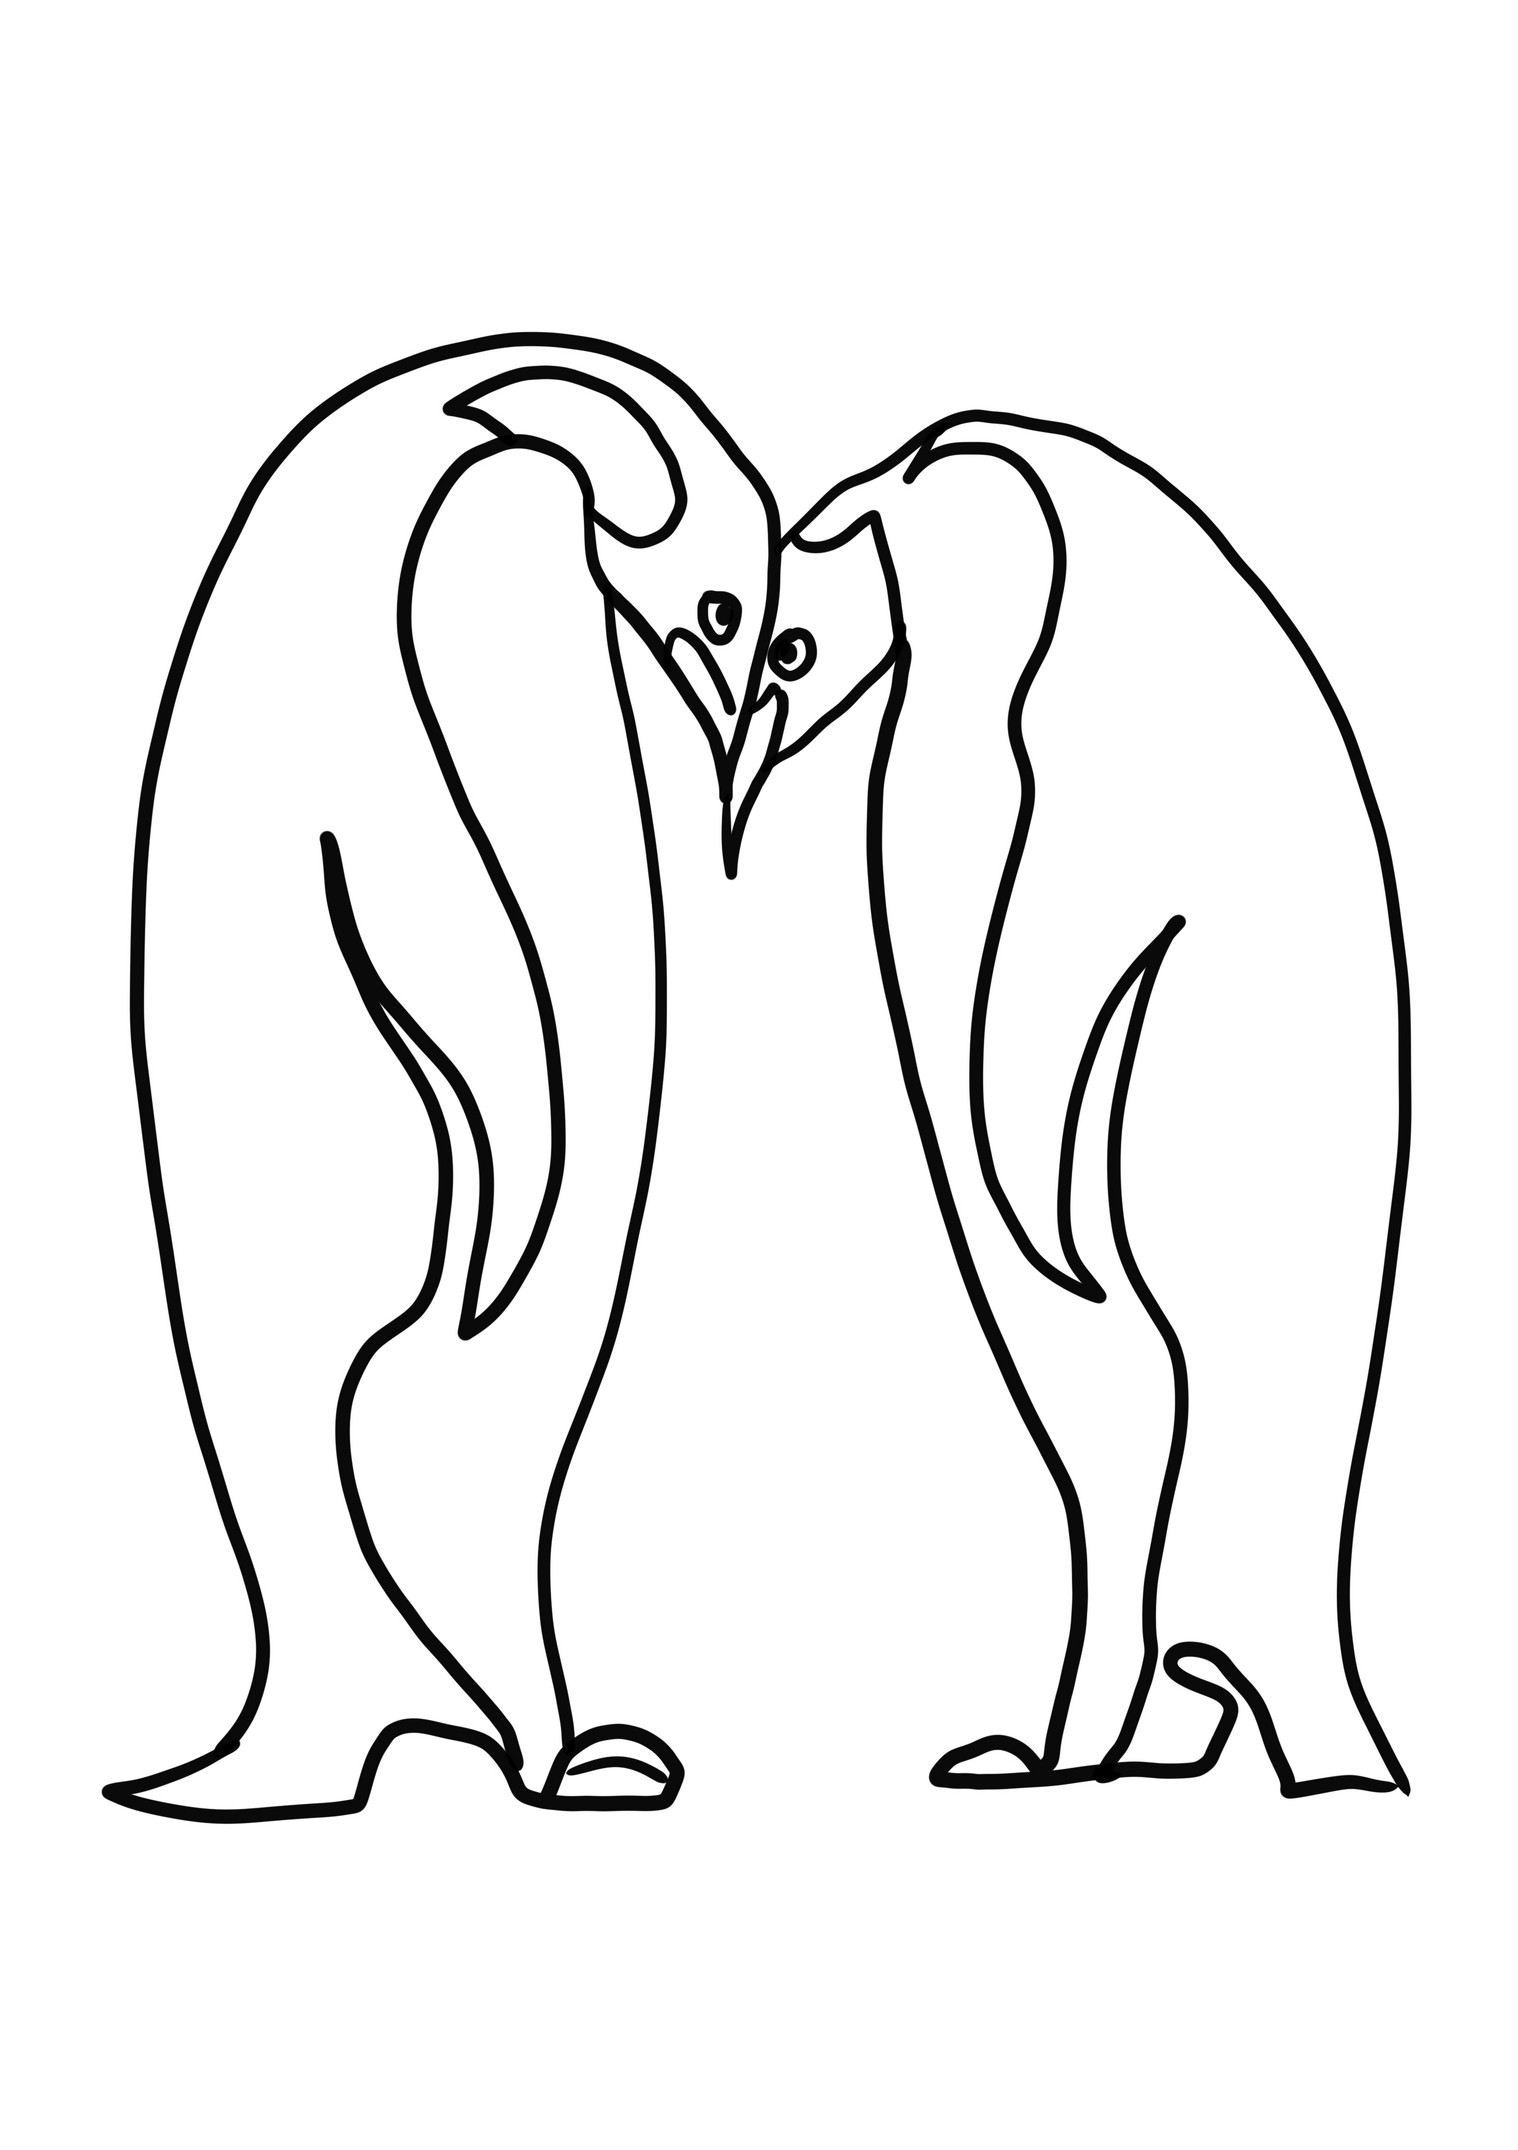 Disegno da colorare di coppia di pinguini innamorati